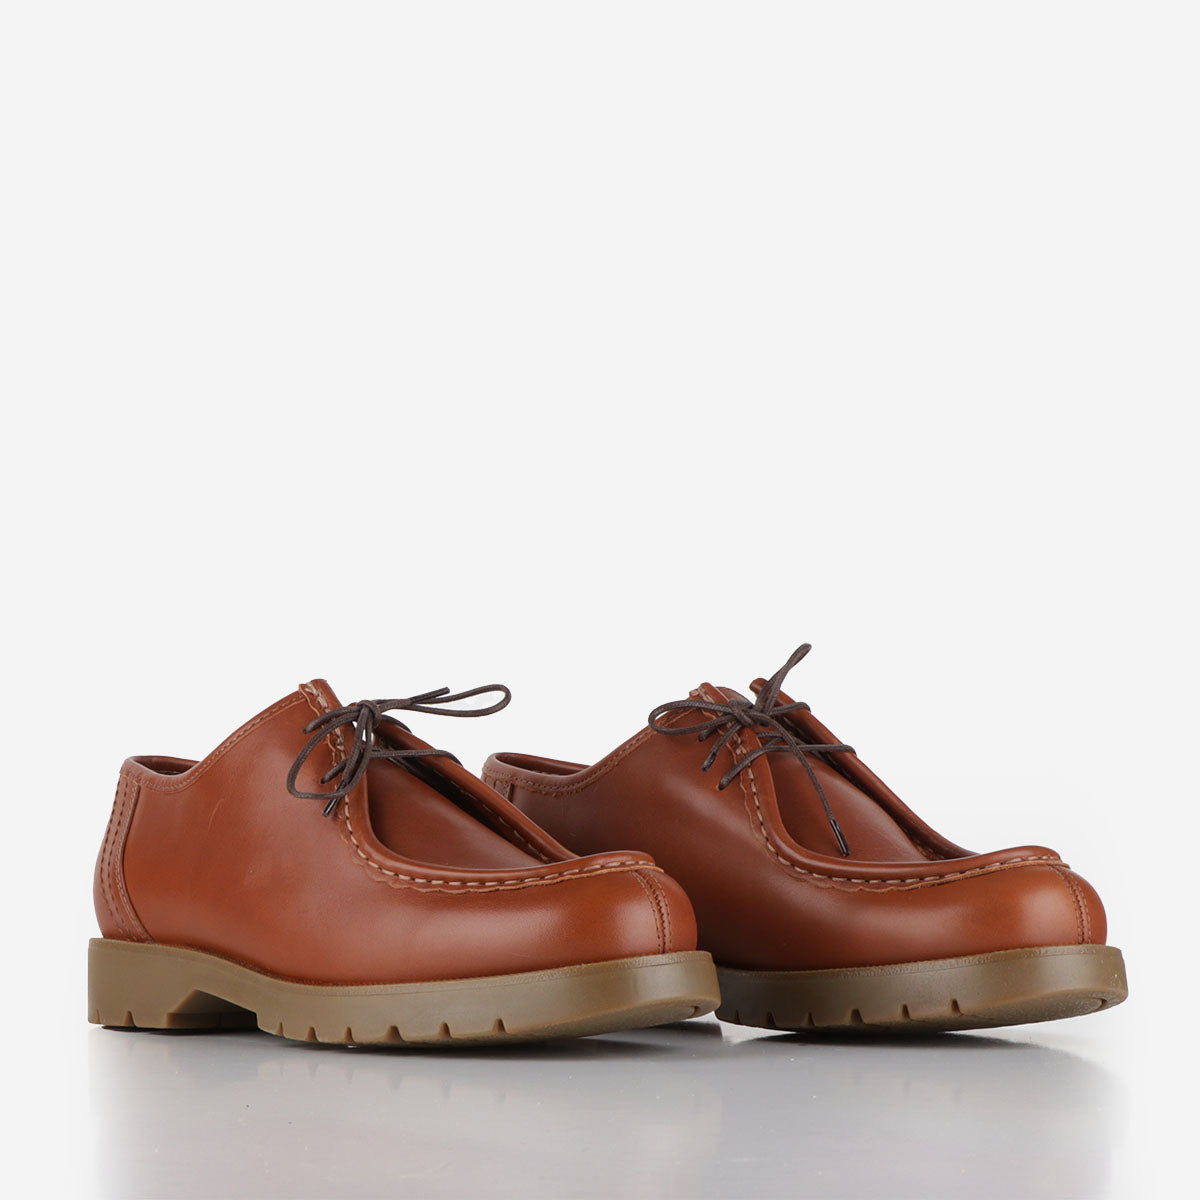 Kleman Padror Oak Shoes, Brick, Detail Shot 2